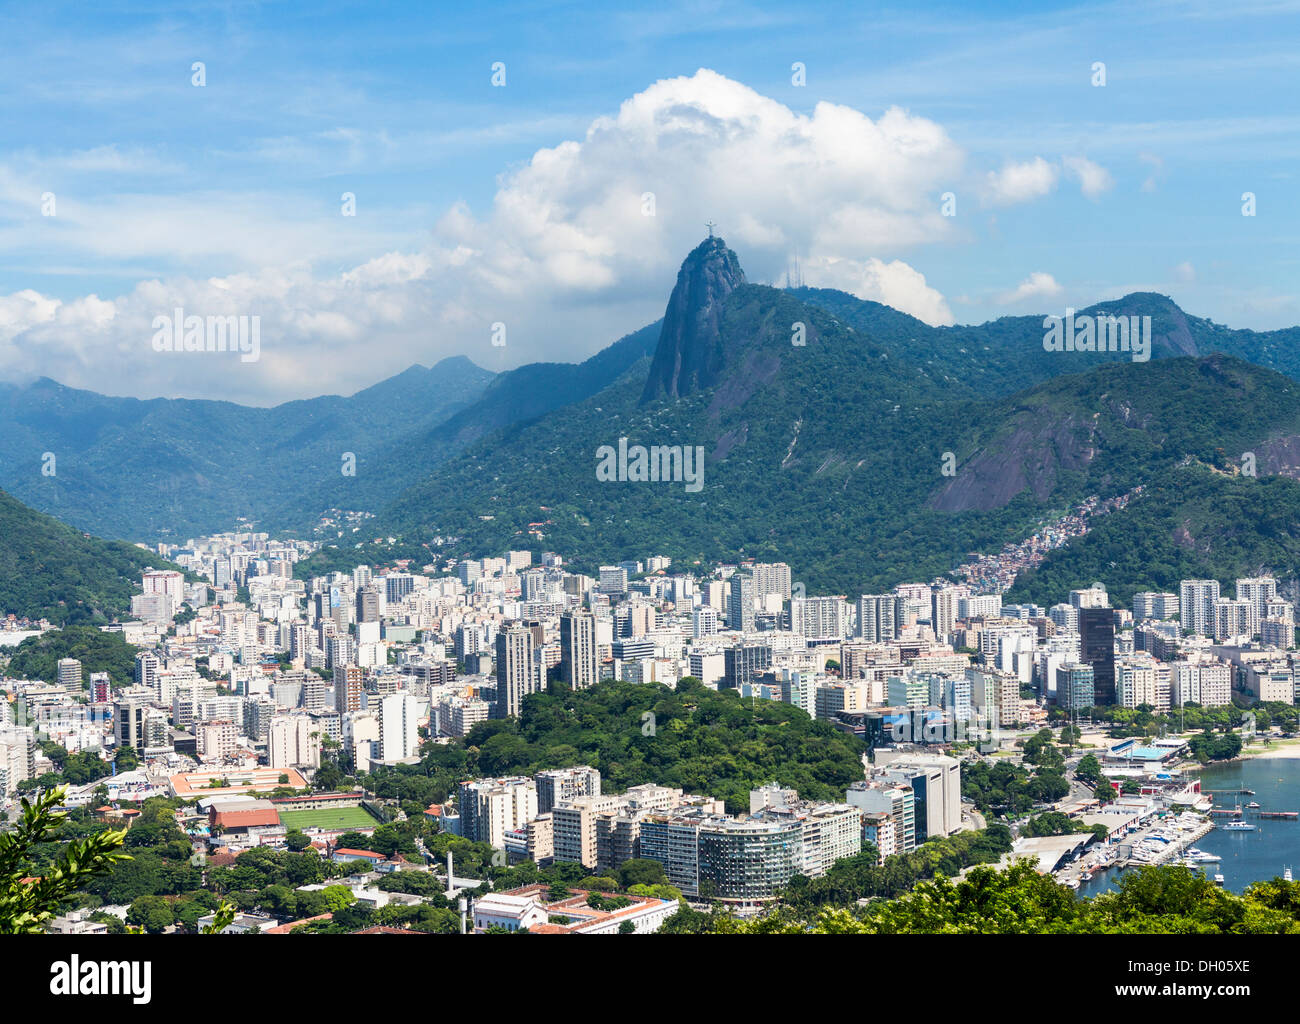 La ciudad de Río de Janeiro, Brasil - Antena de Sugarloaf Mountain; la estatua de Cristo Redentor en la montaña de Corcovado en segundo plano. Foto de stock